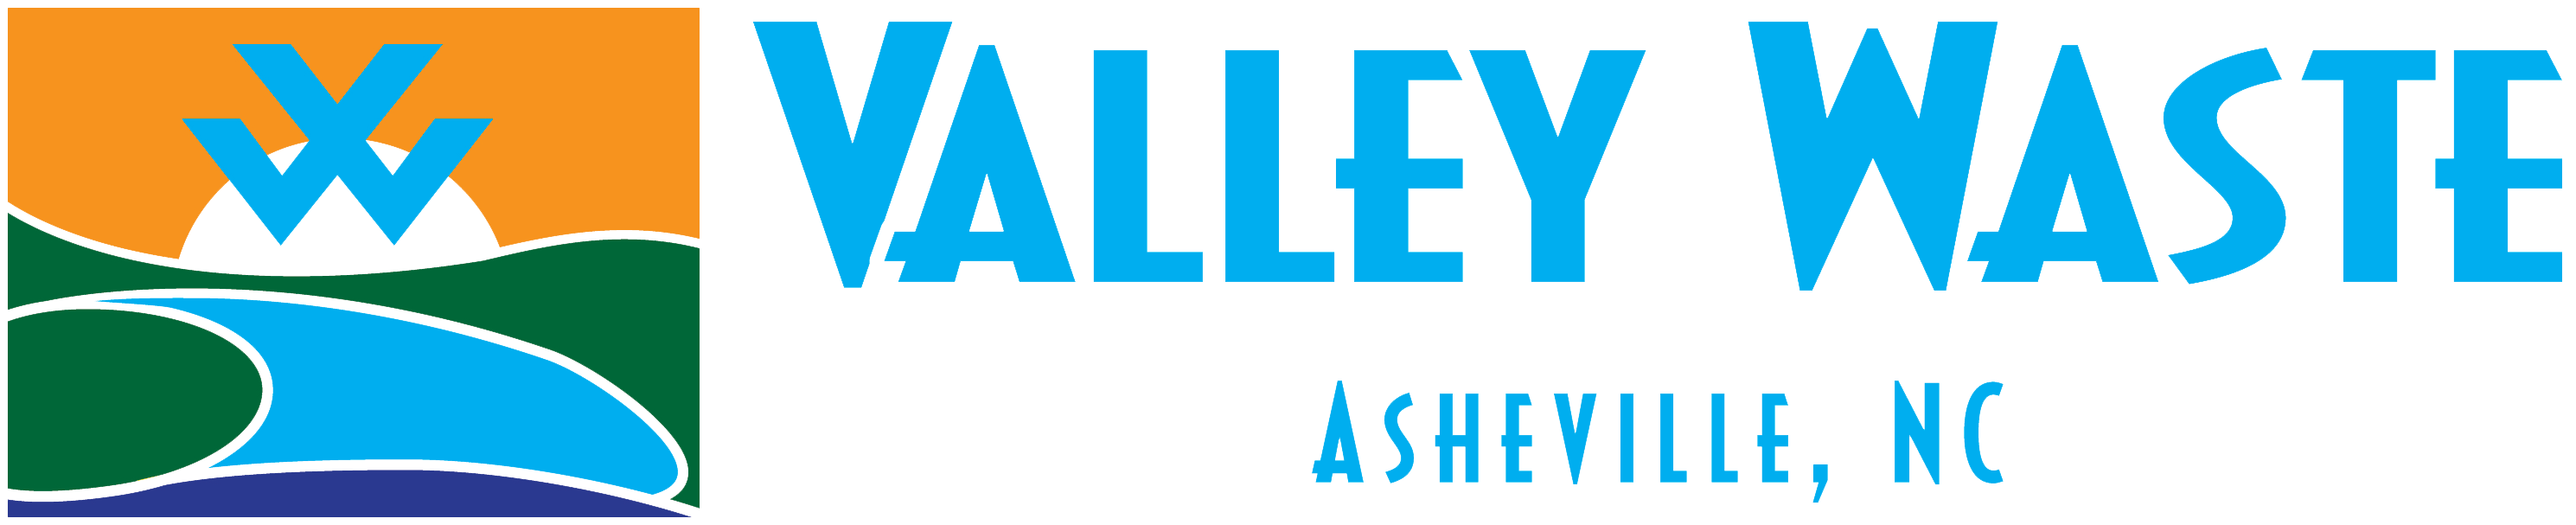 Valley Waste Asheville